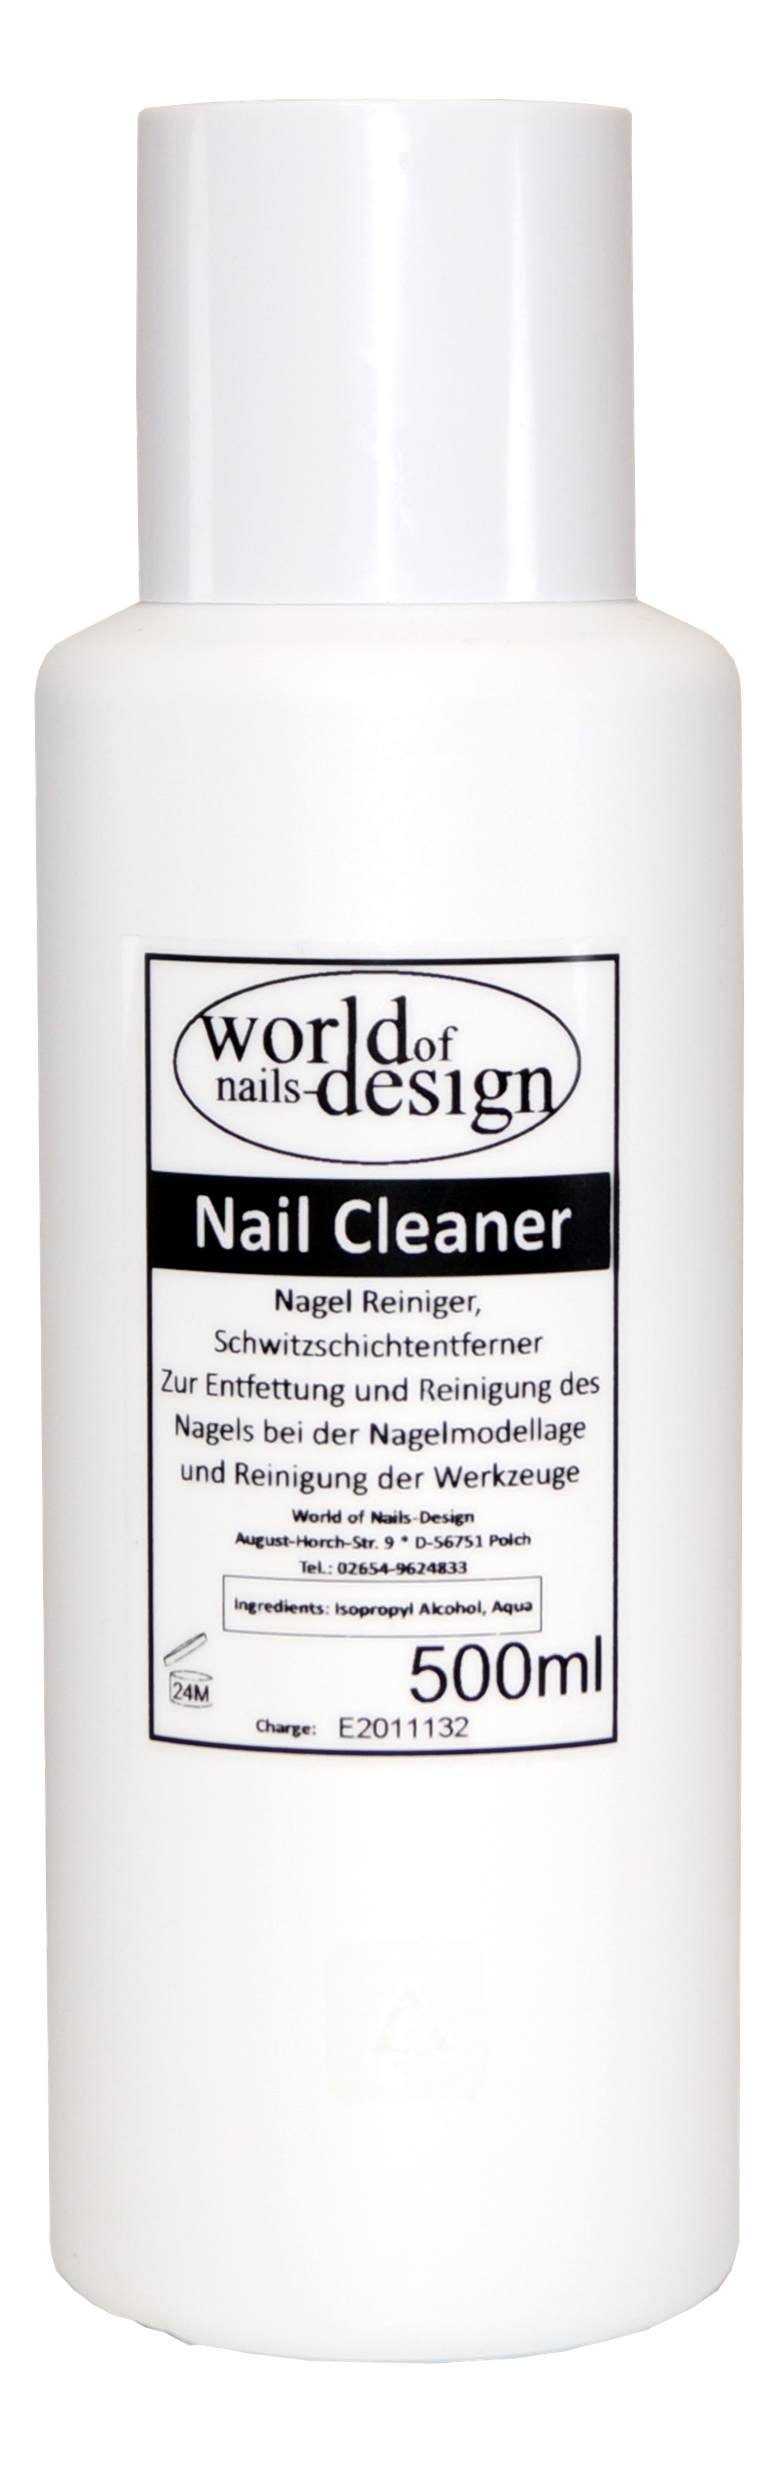 World Cleaner Gelnägel 500ml Für Nagellackentferner Nagelreiniger of Cleaner Nails-Design Nail